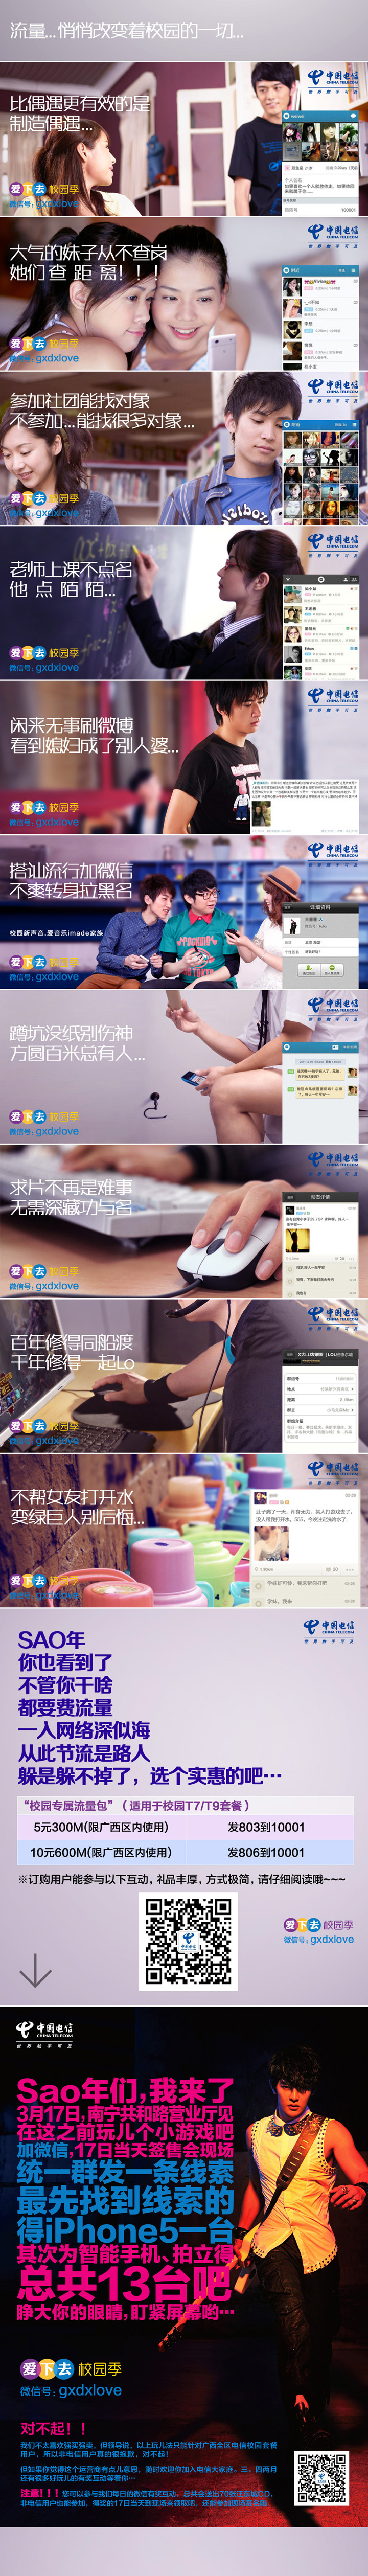 广西壮族自治区公众信息产业有限公司：广西信产“校园季”系列创意推广 